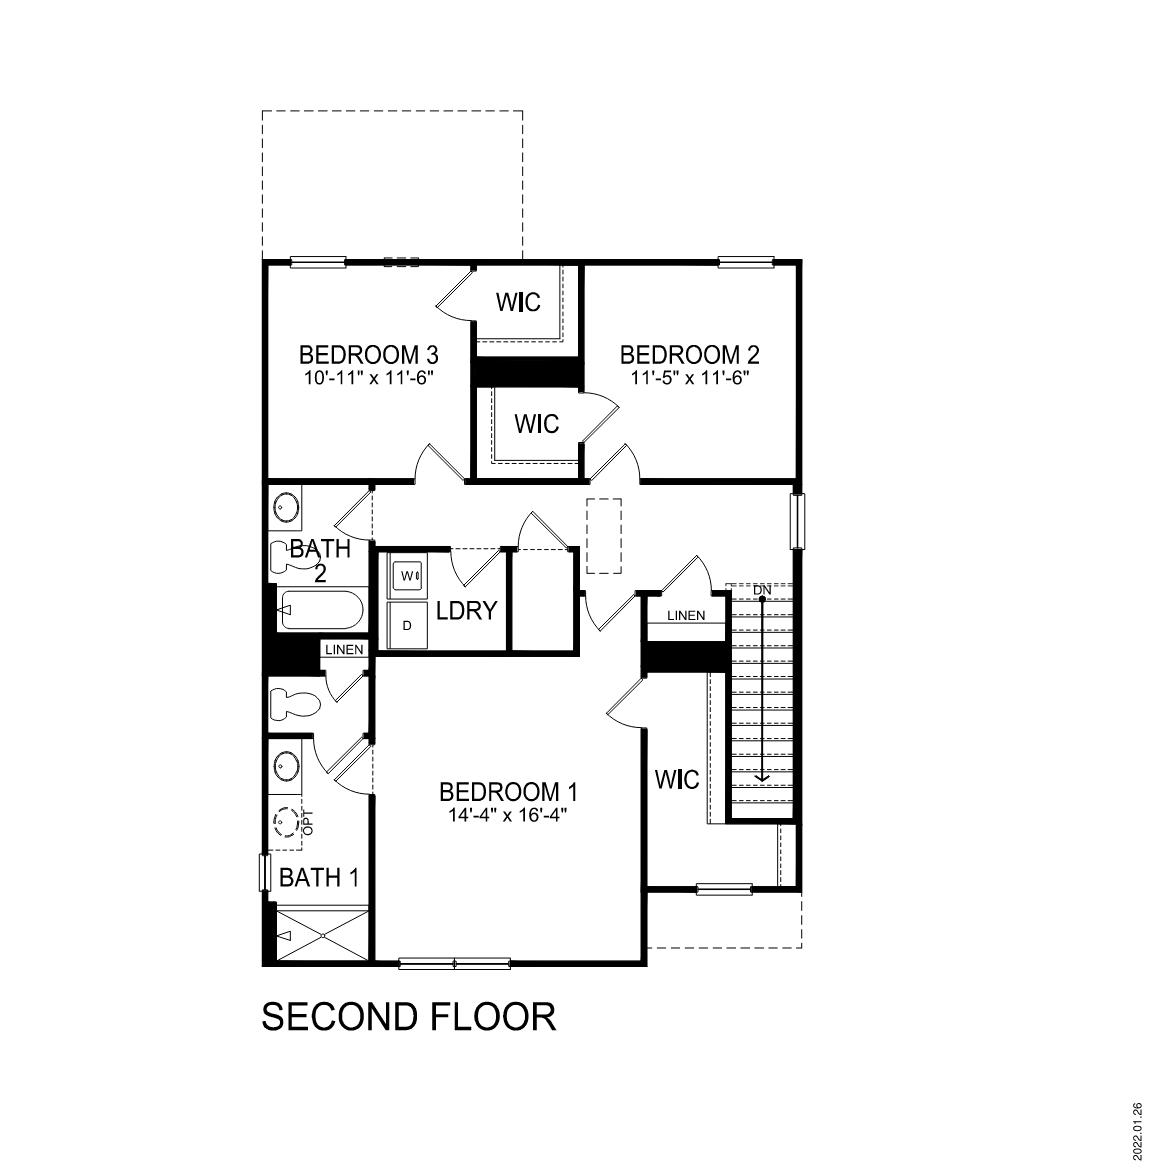 Darwin second floor plan